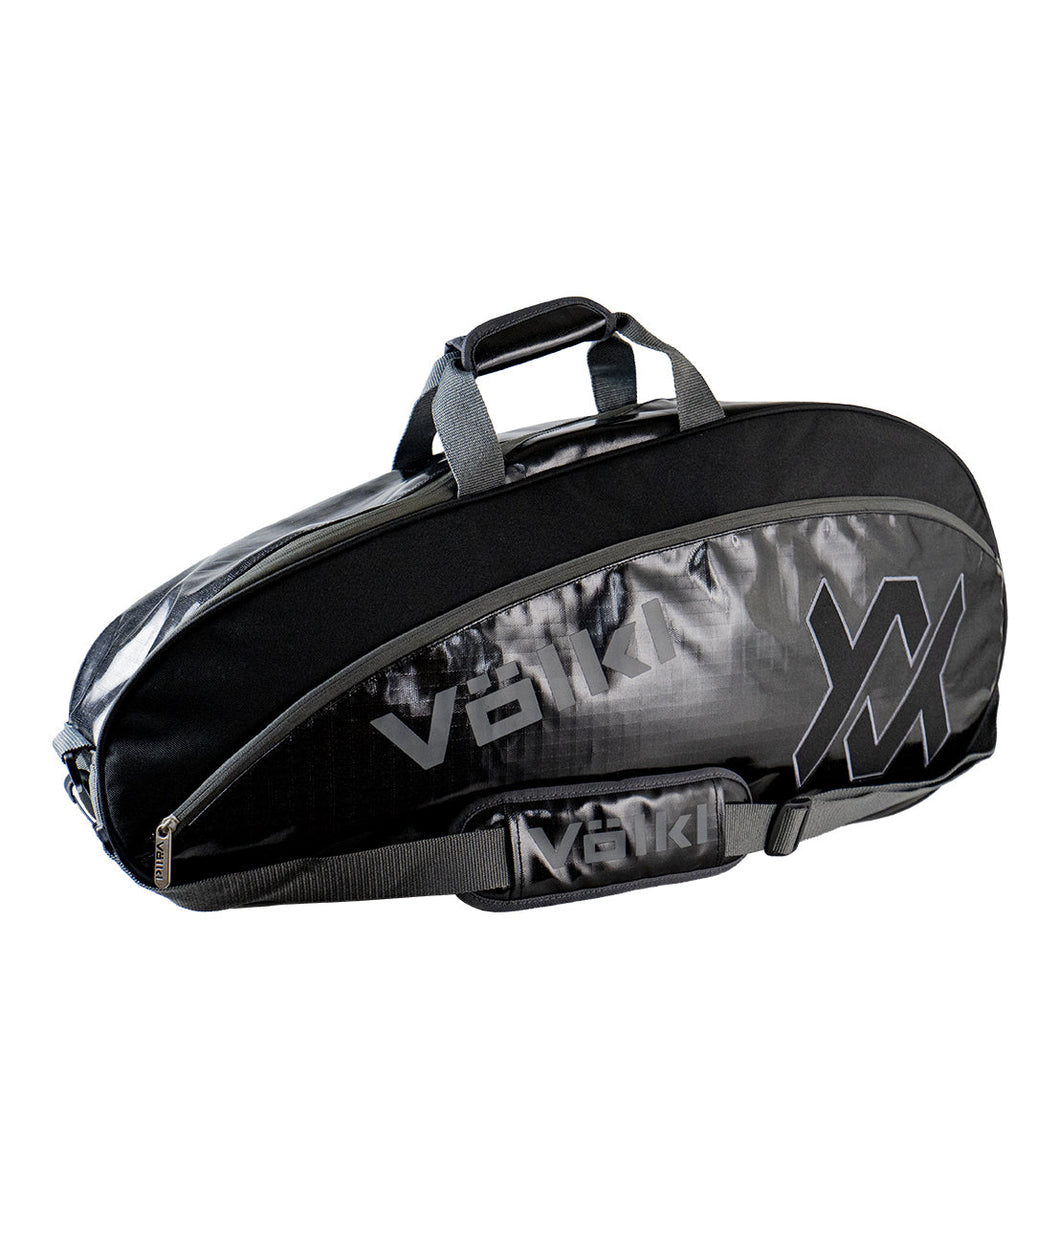 Volkl PRIMO Pro 3-5R Bag Black